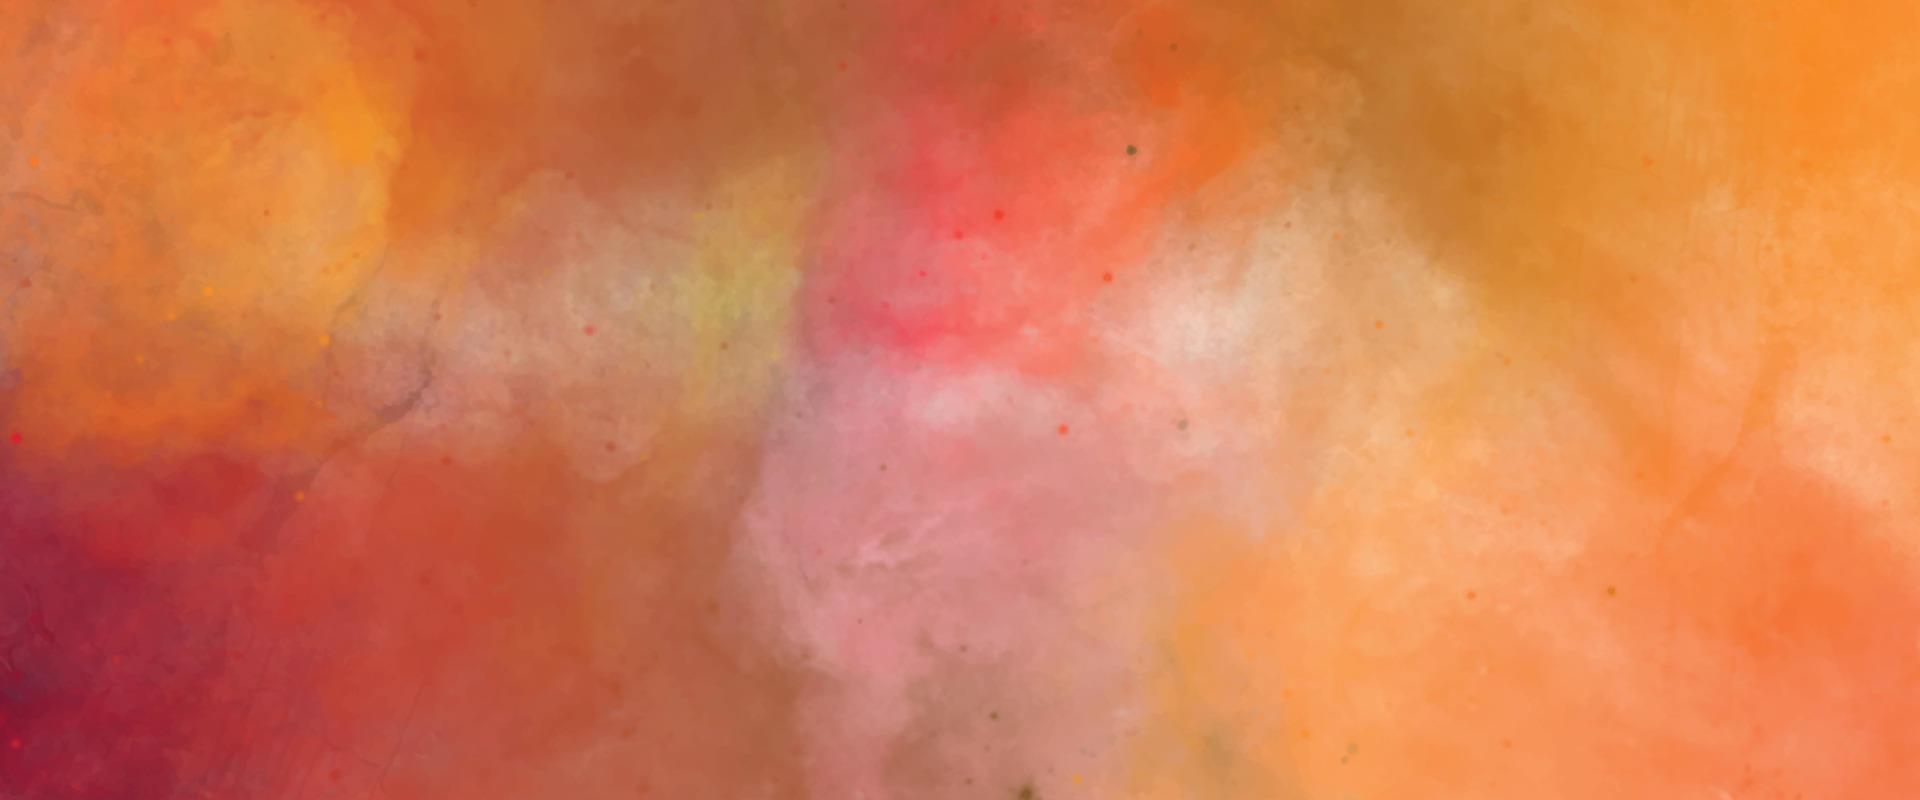 fundo vermelho e amarelo, abstrato aquarela com espaço. nascer do sol colorido ou cores do pôr do sol em formas nubladas. bela textura de amarelo em fundo aquarela pintado à mão. vetor